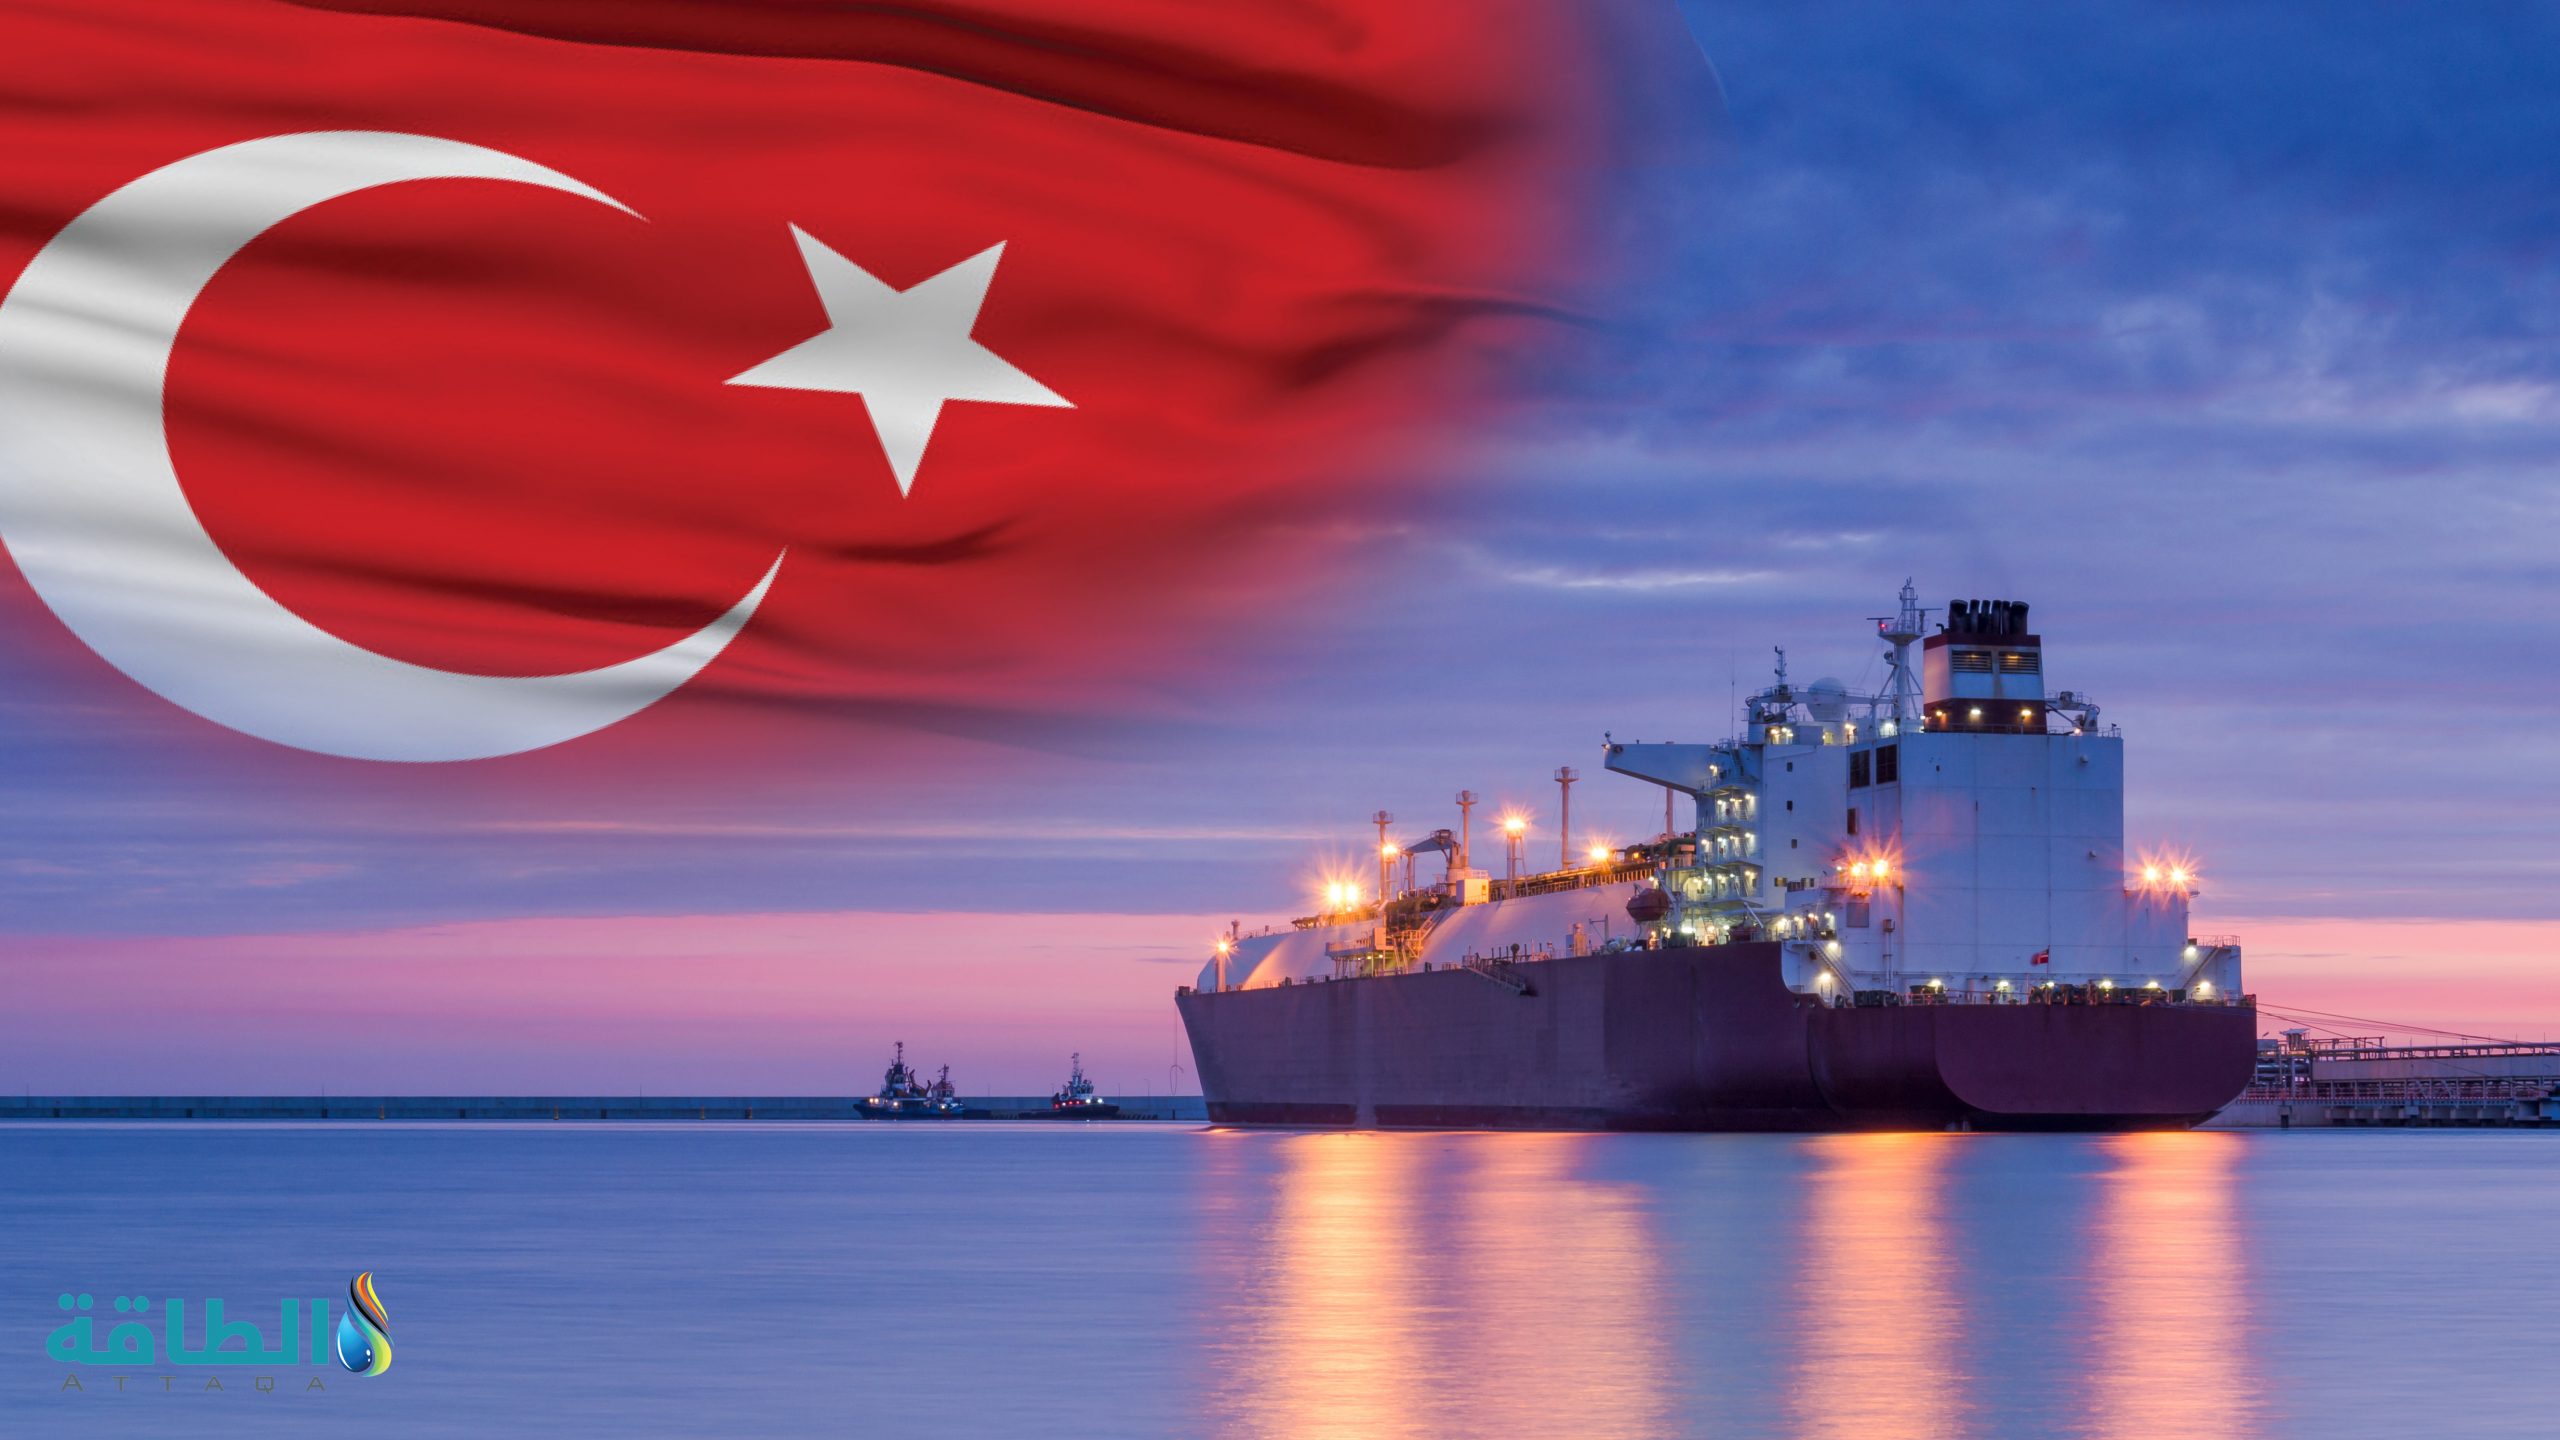 واردات الغاز التركية.. إنتاج الطاقة- تركيا